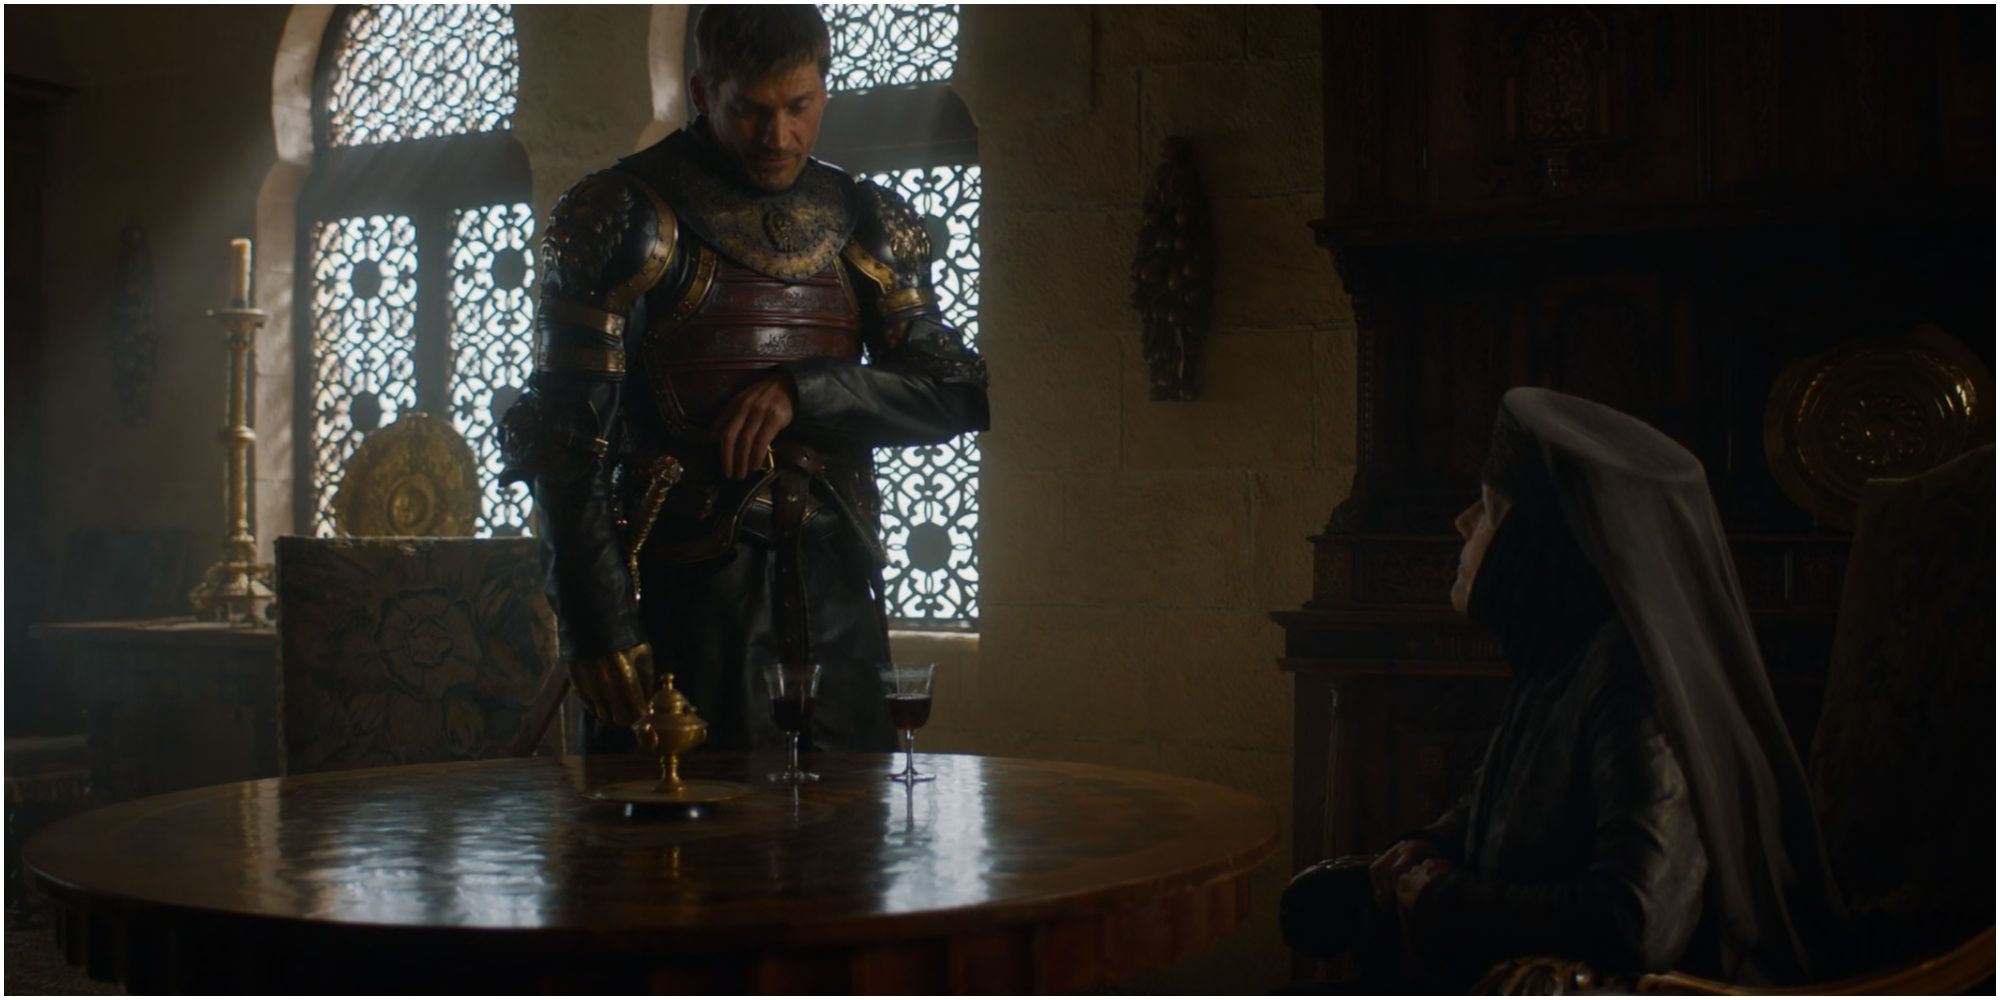 Olenna Tyrell percebe o lamento da viúva de Jaime Lannister em Game of Thrones.